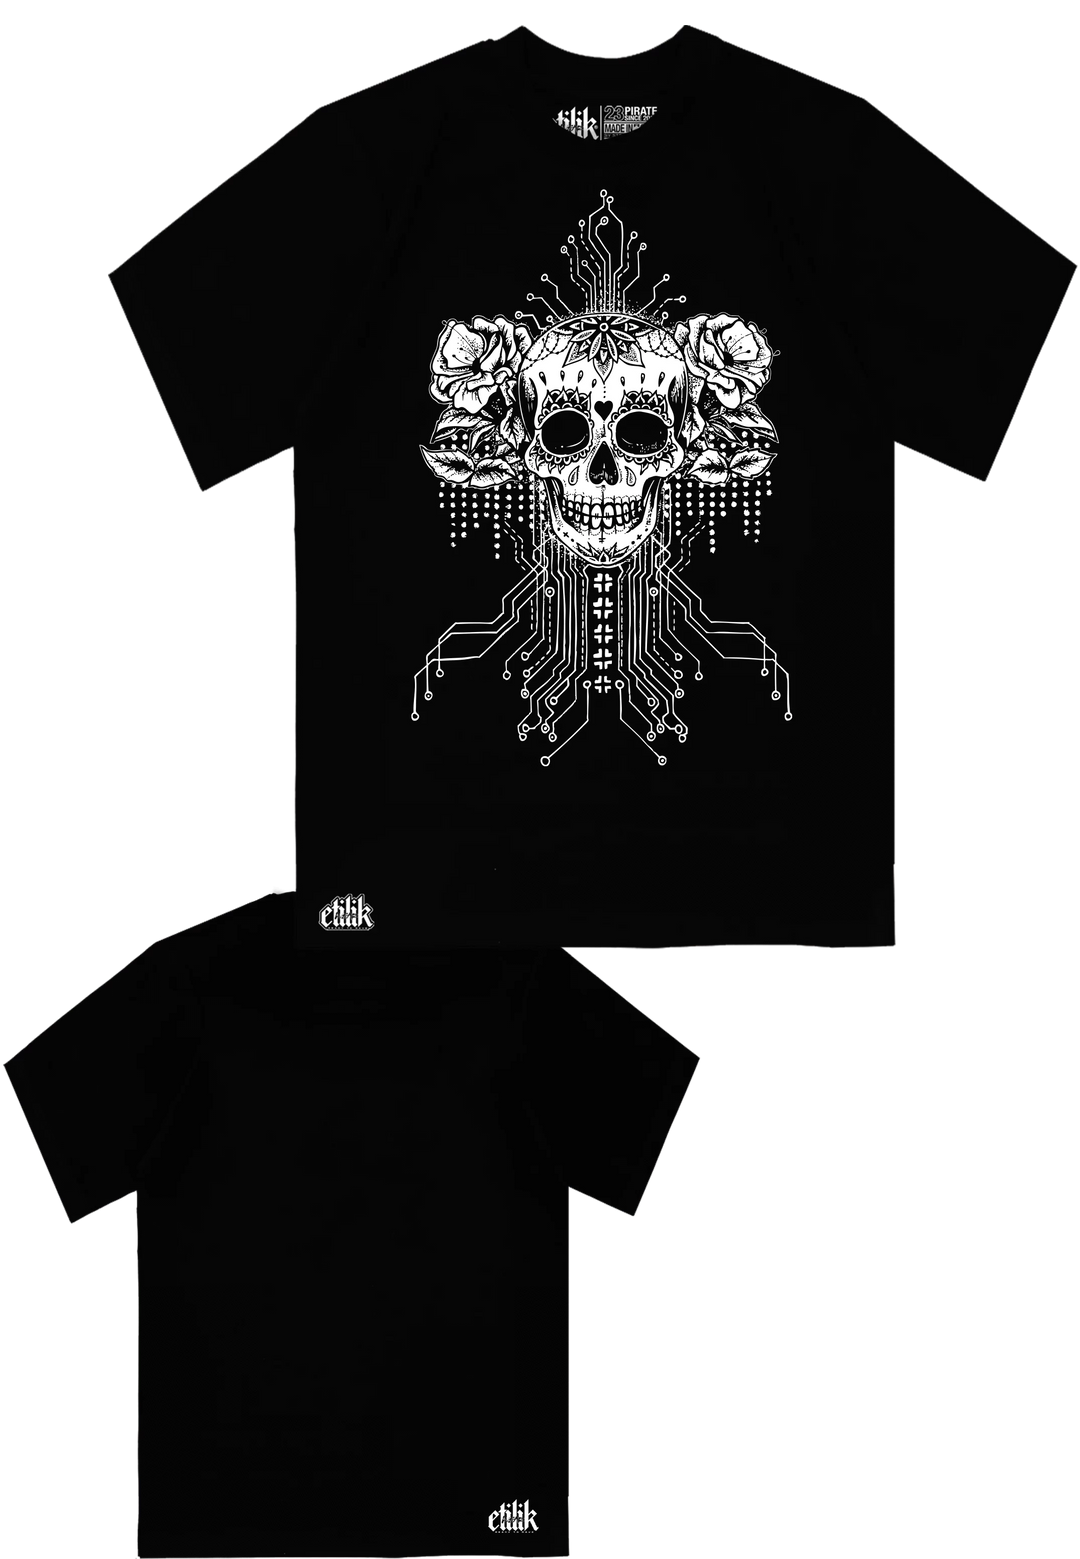 Matrix Skull - T-shirt - Etilik Wear 